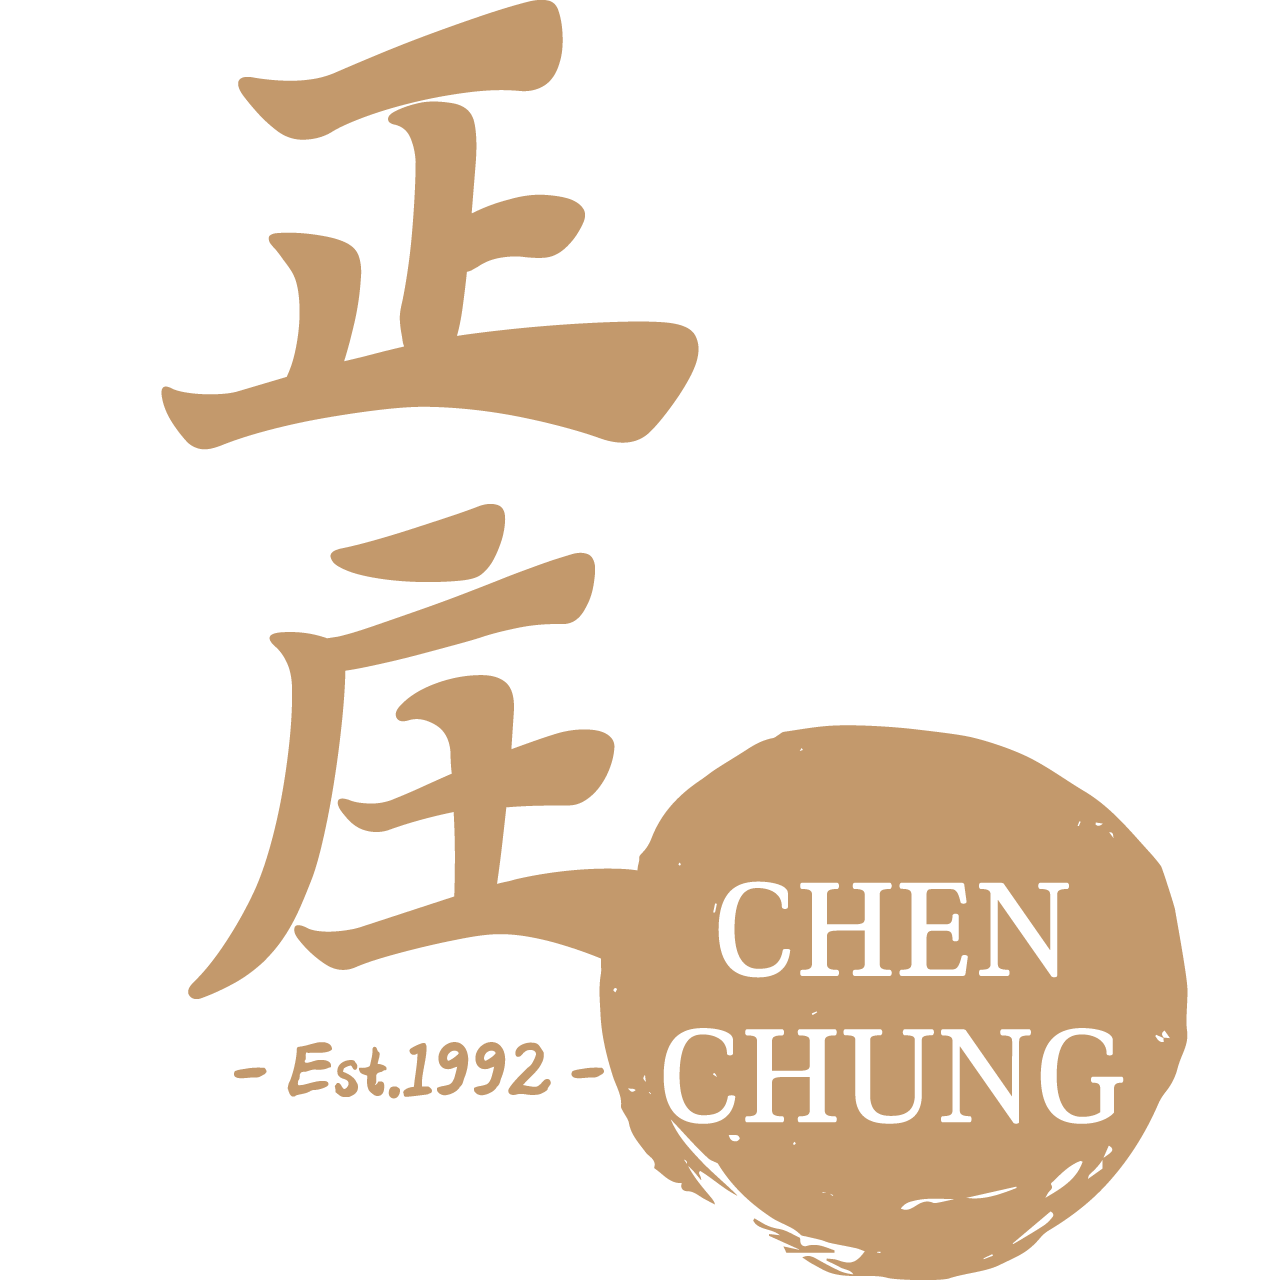 Chen Chung Bakkwa